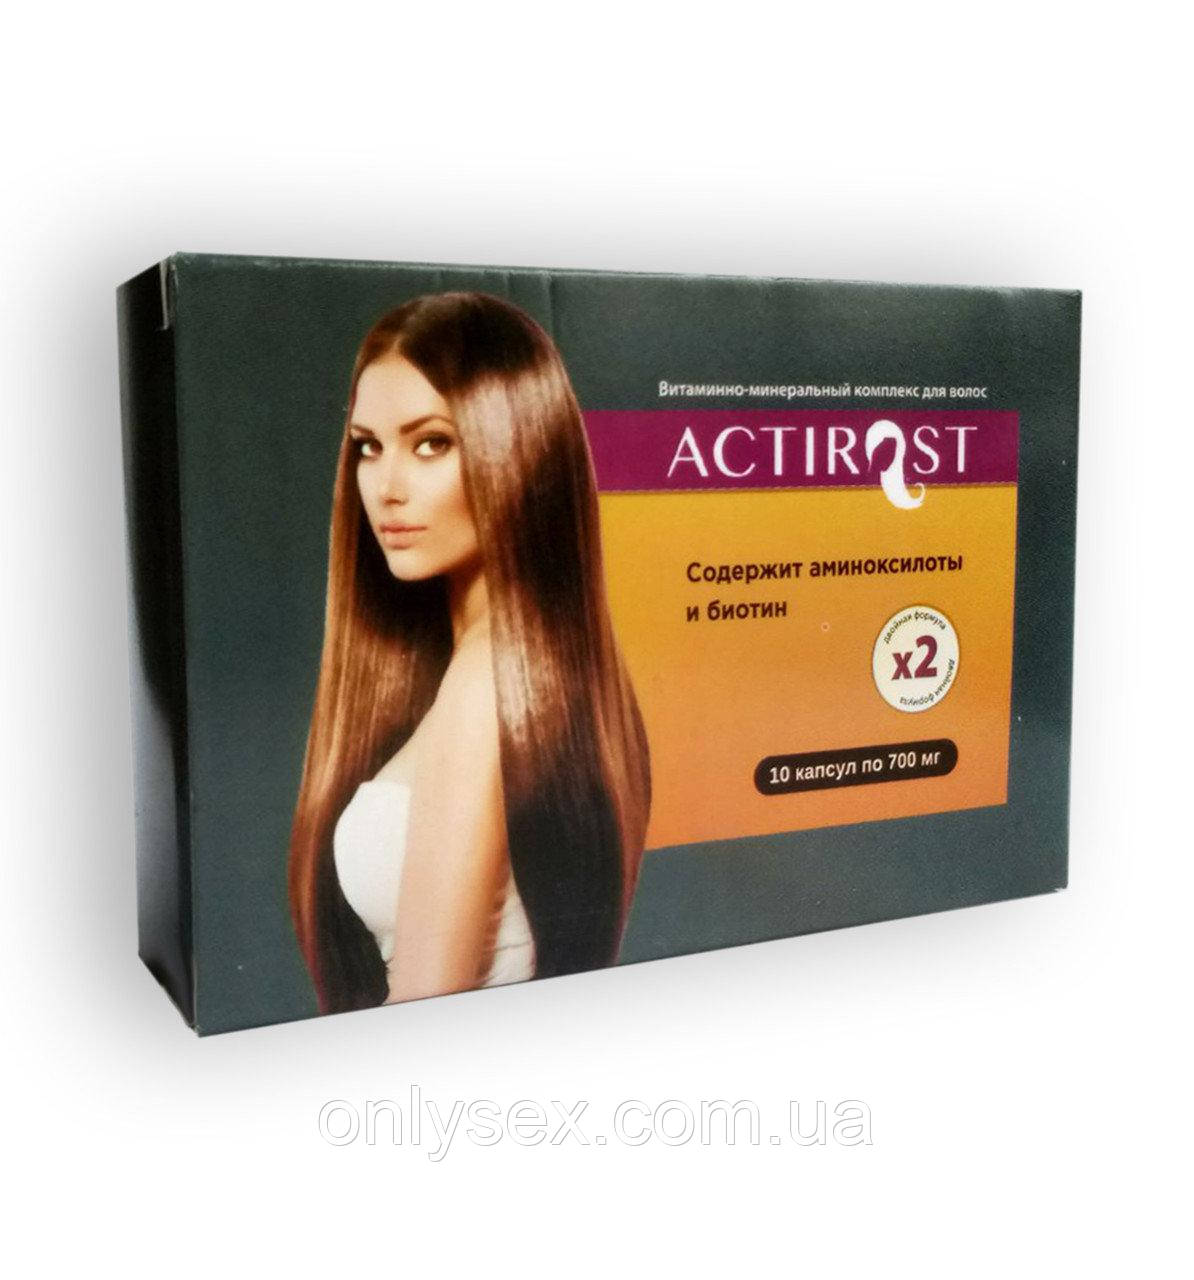 ActiRost — Вітамінно-мінеральний комплекс для волосся (АктиРост)